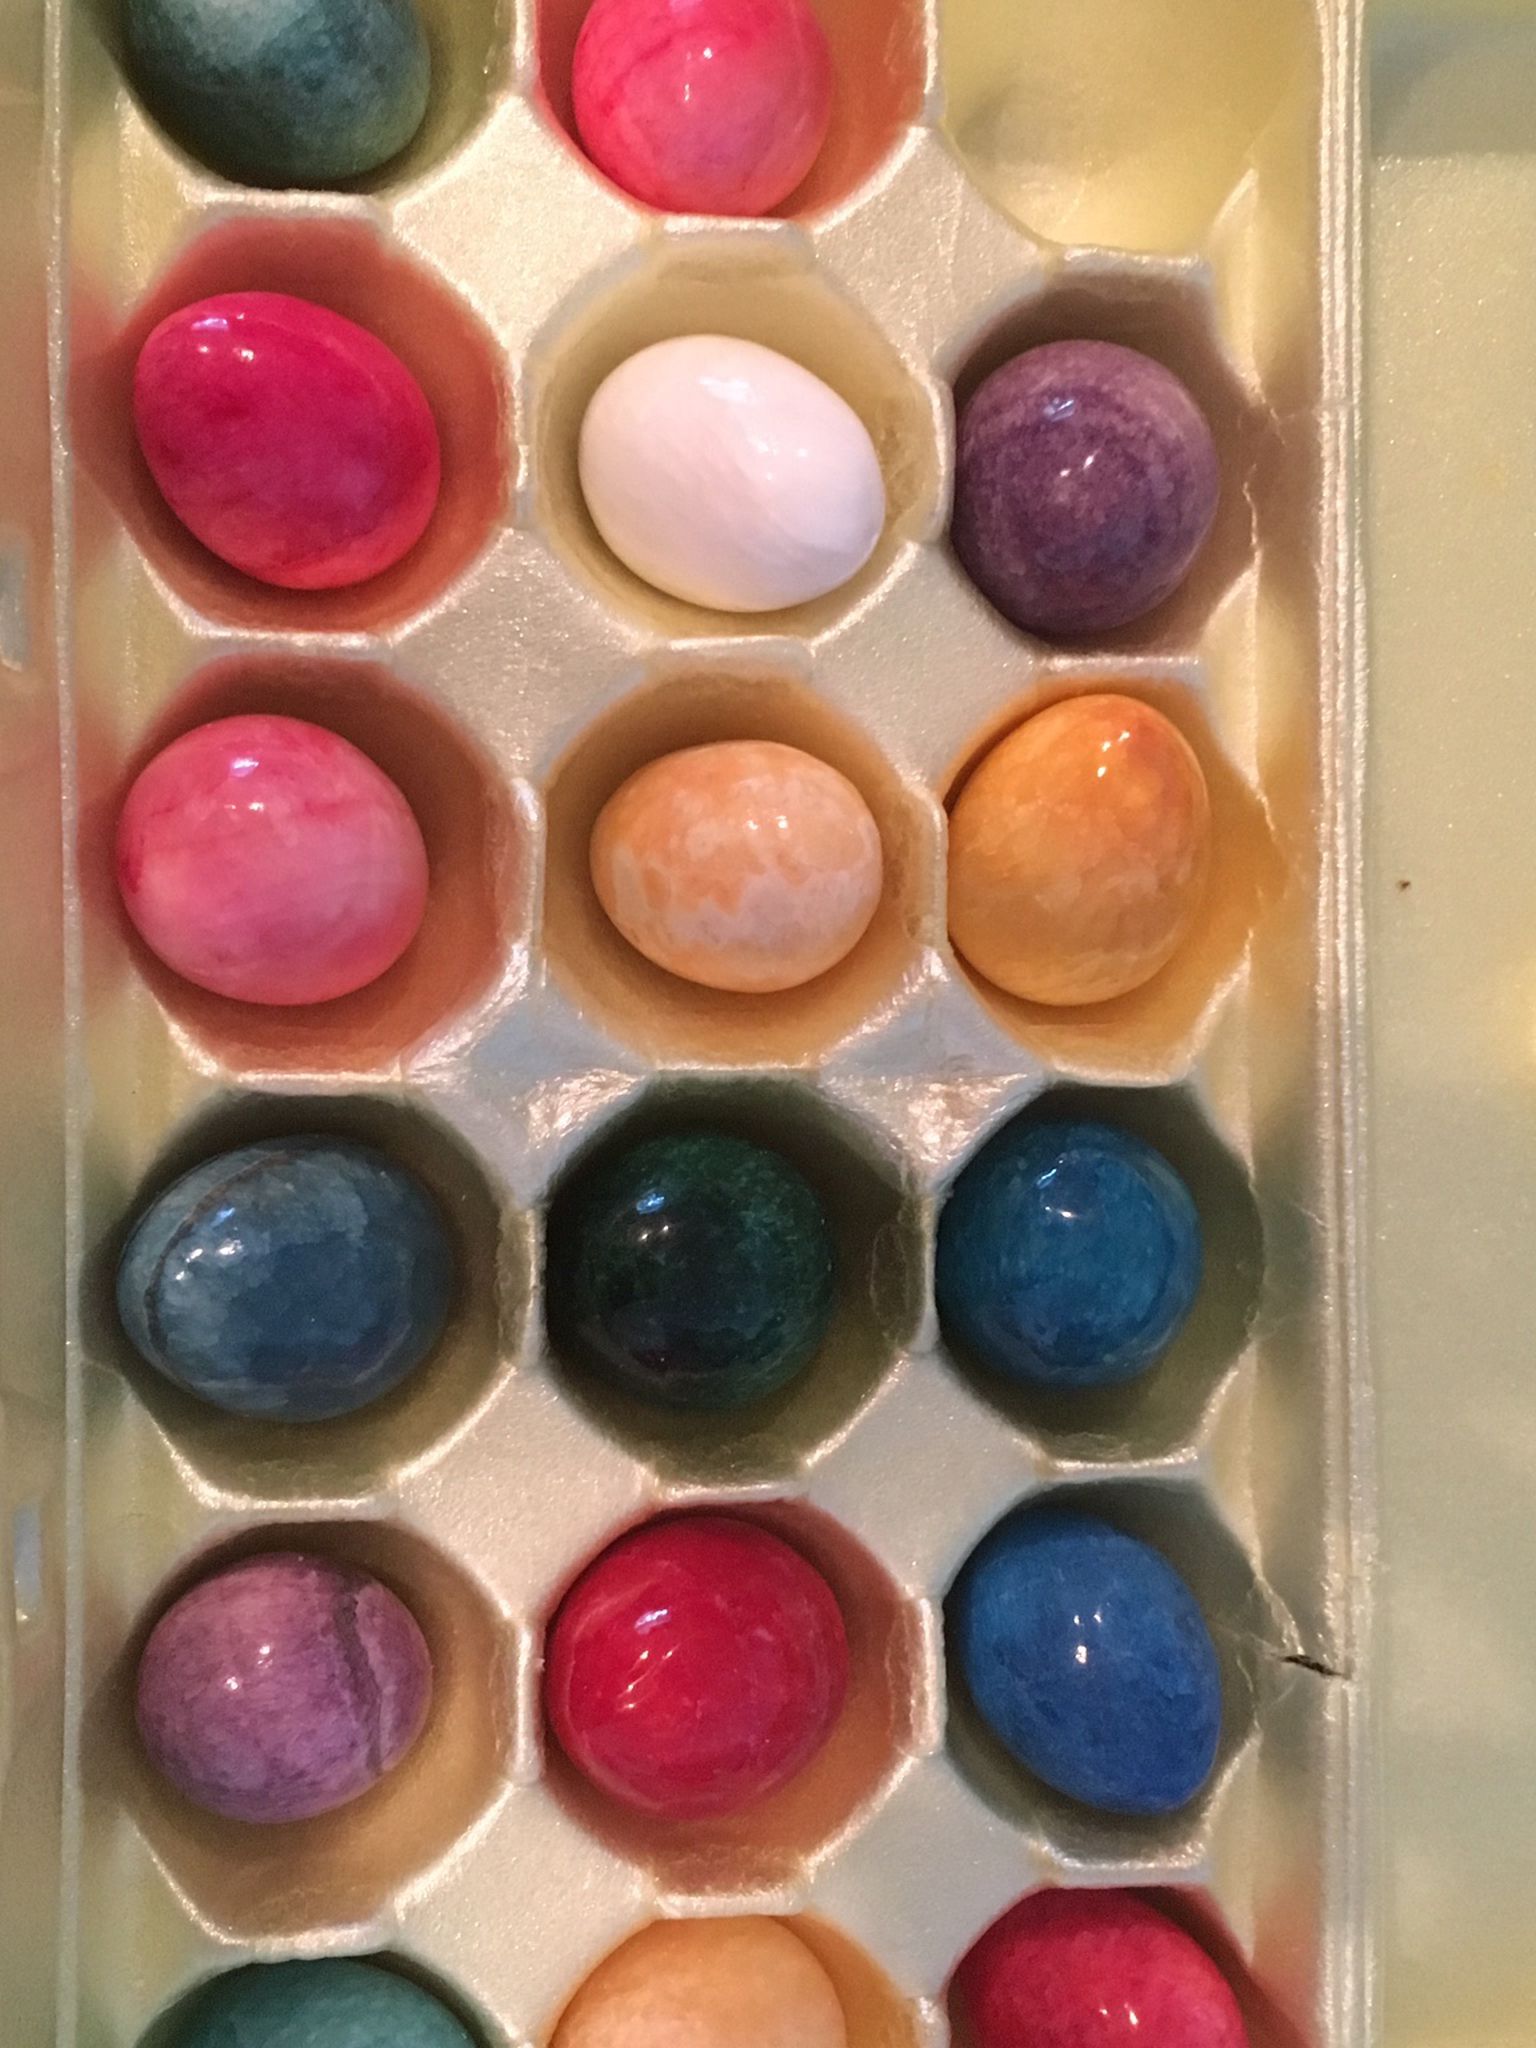 17 semi-precious stone Easter eggs